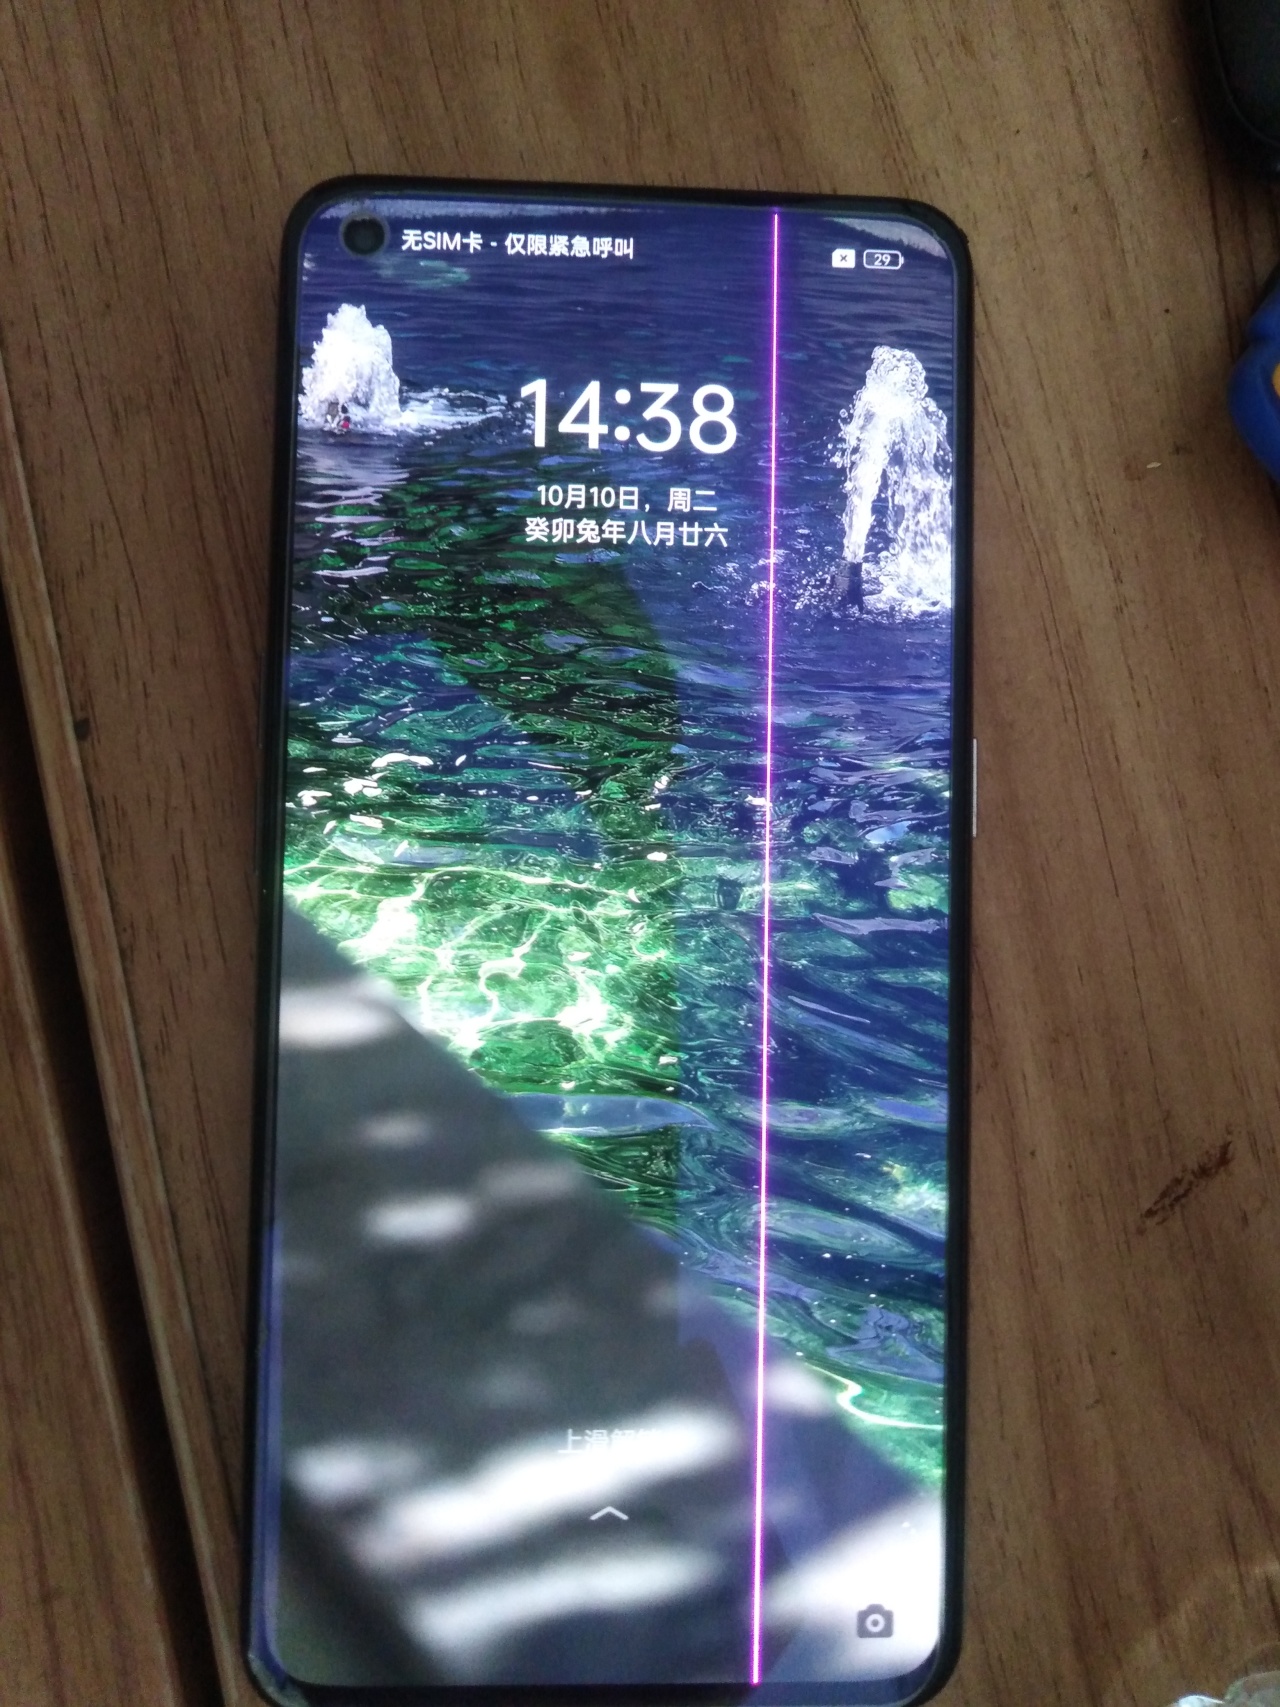 安卓手机屏幕突然变白屏，未摔未进水，原因究竟为何？  第3张